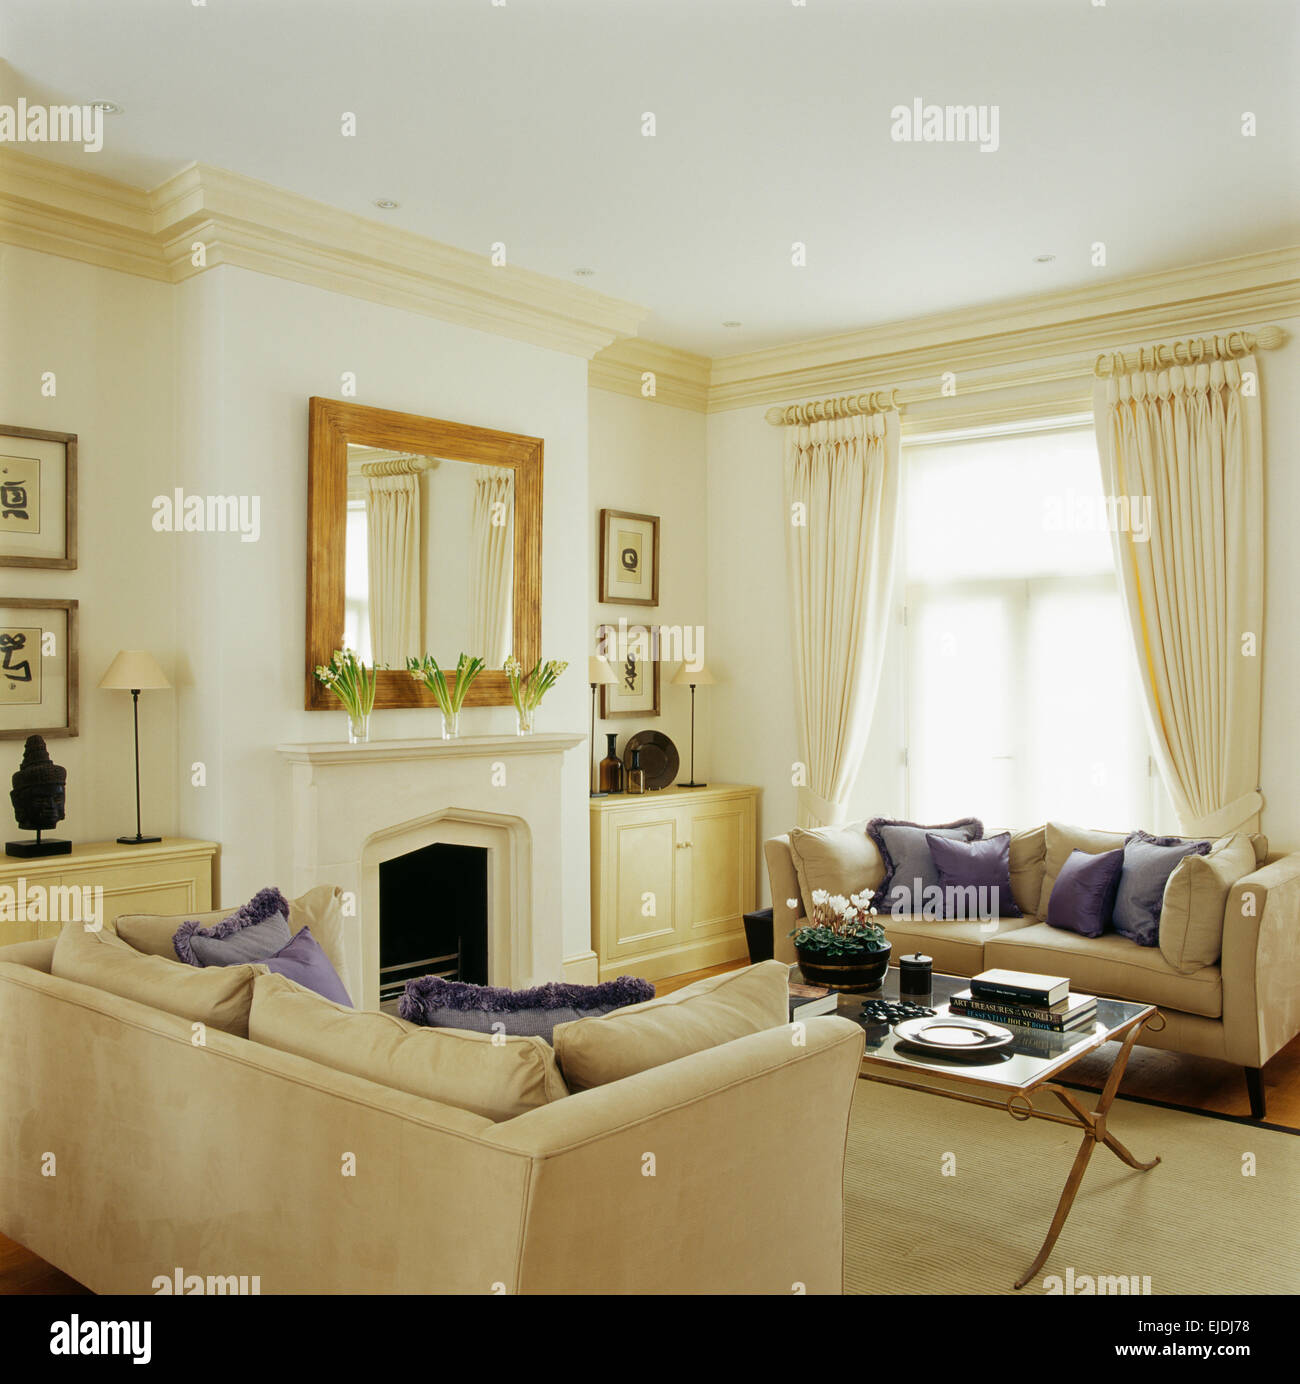 Malva di cuscini di seta su divani color crema in elegante residenza di città la stanza di seduta con specchio sopra il camino Foto Stock